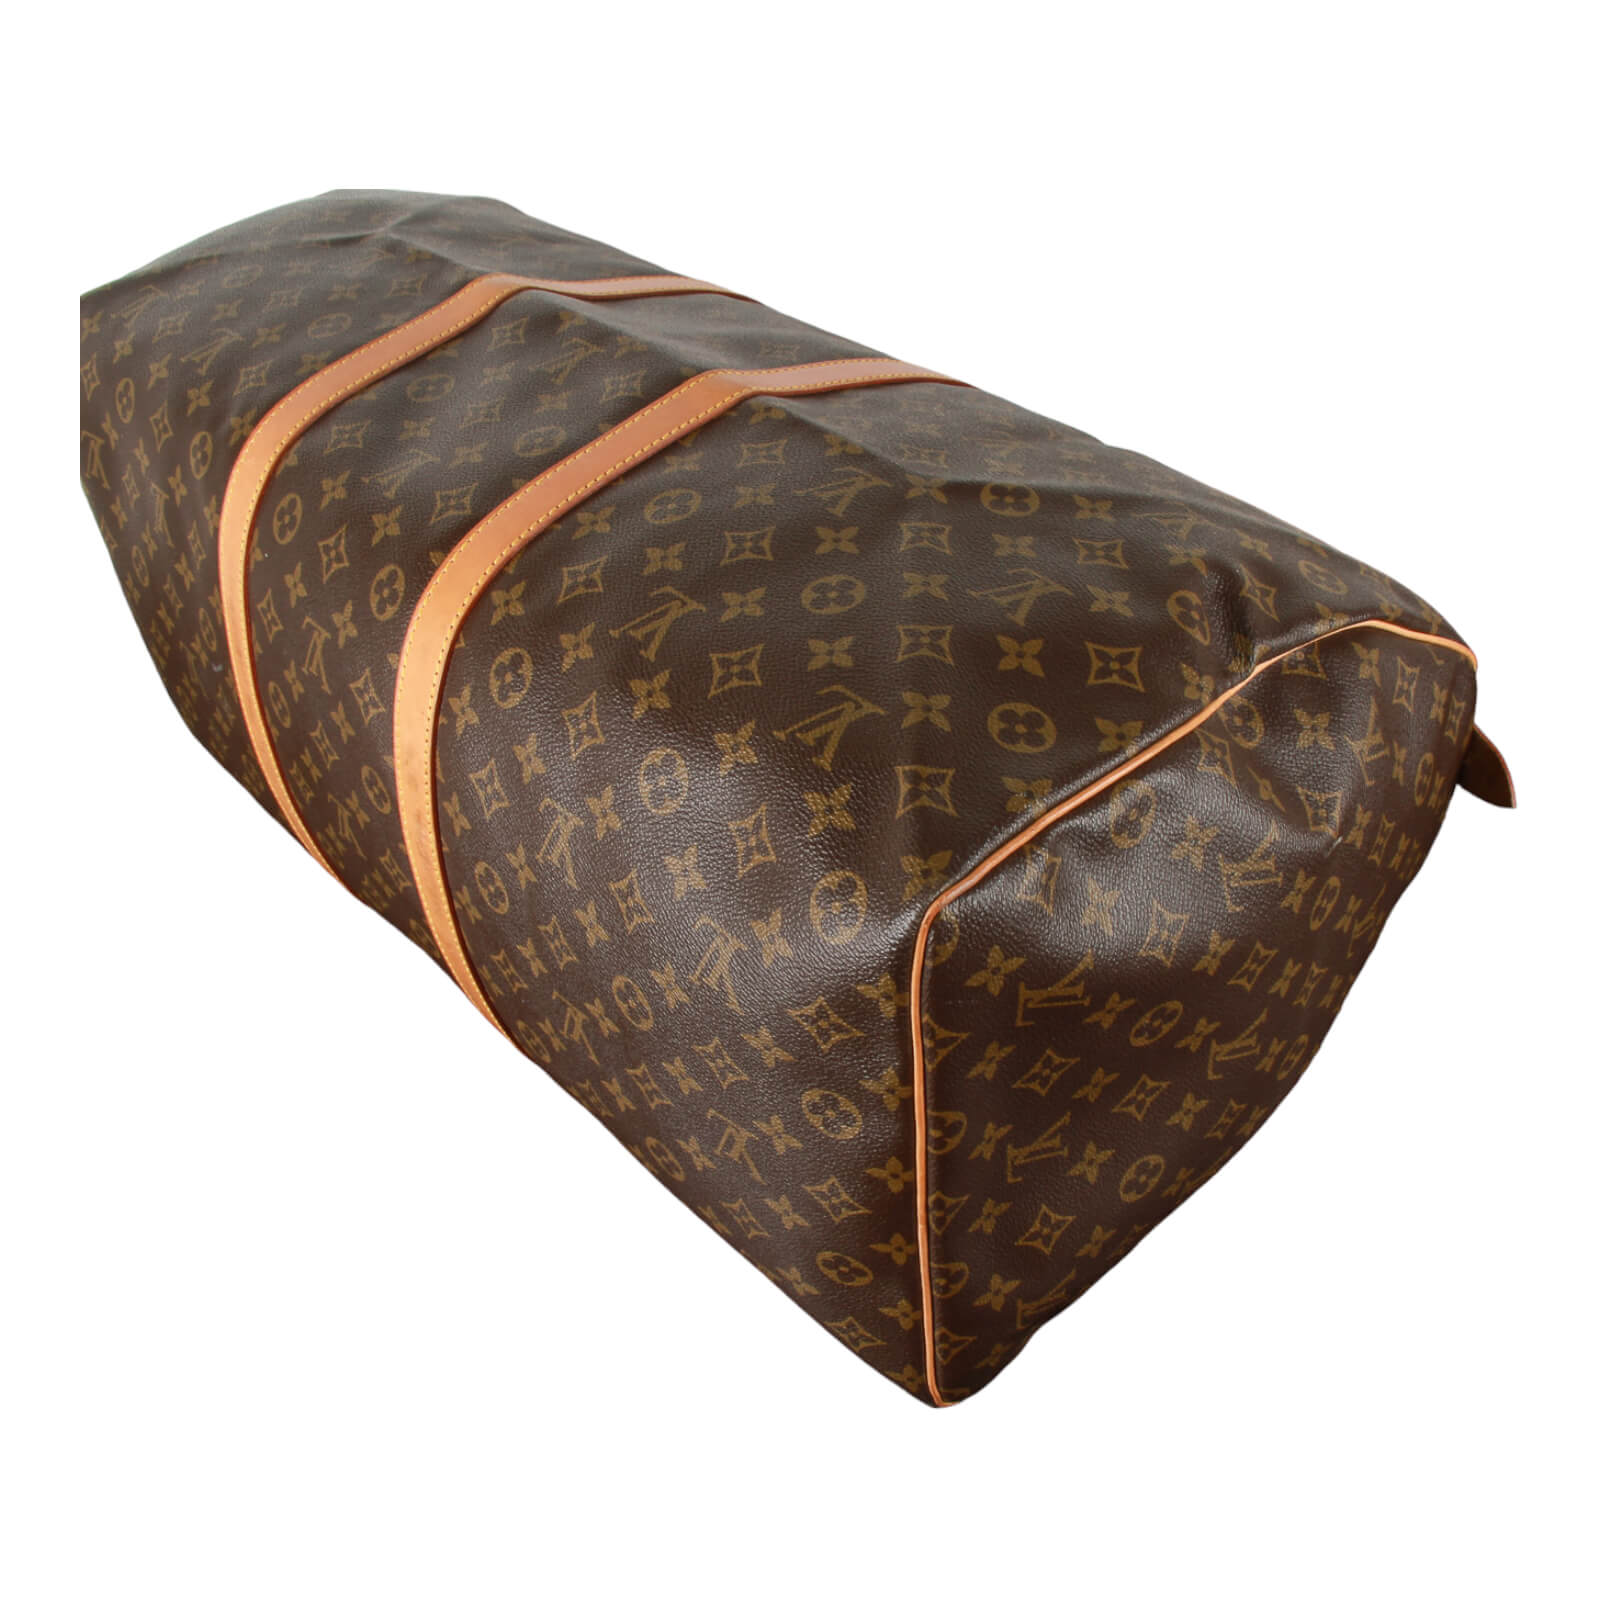 Louis Vuitton Monogram Keepall 60 Travel Bag +LV Luggage Tag